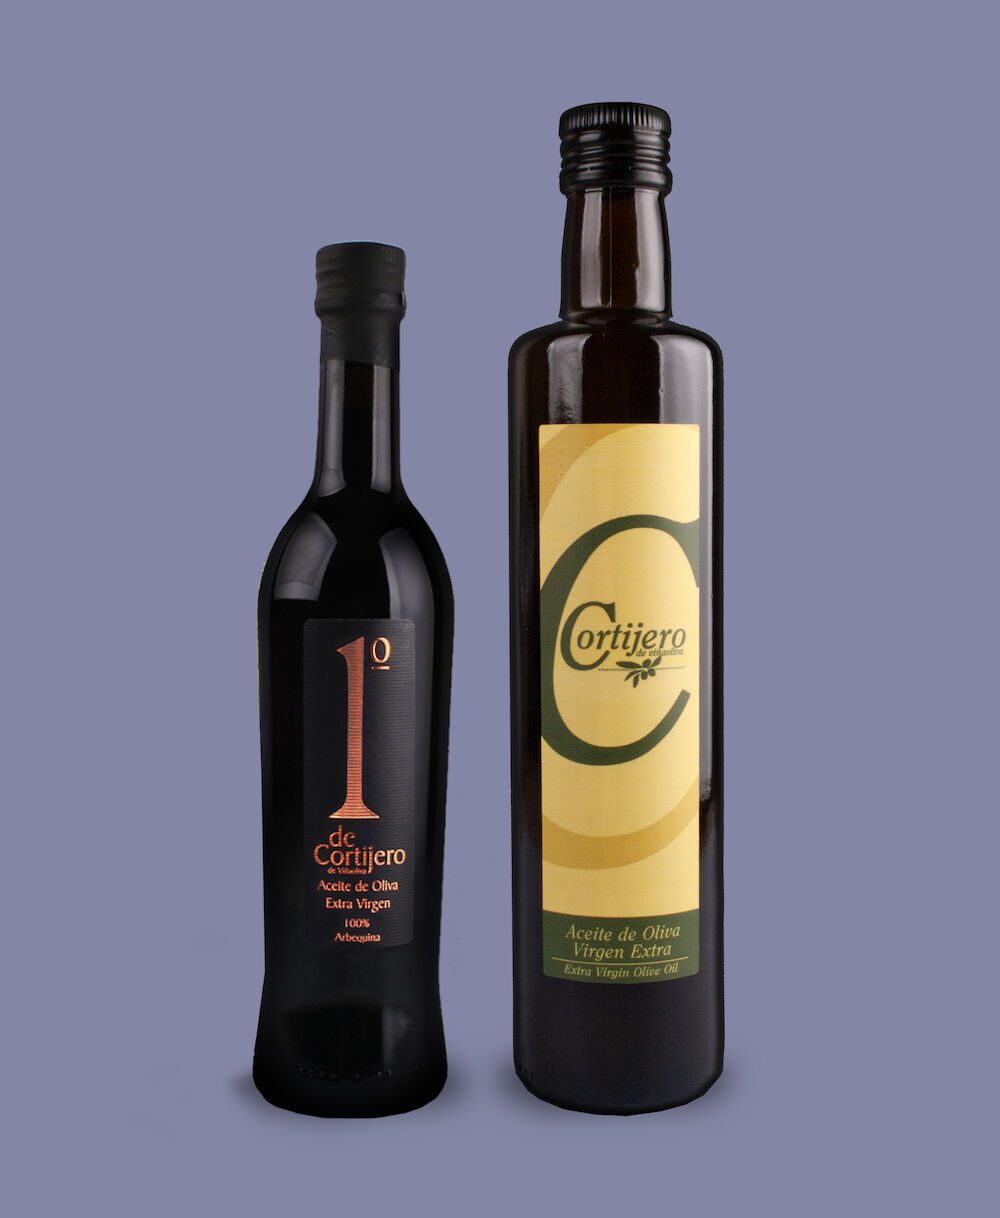 Viñaoliva sacará al mercado un aceite de oliva virgen con marca Extremadura